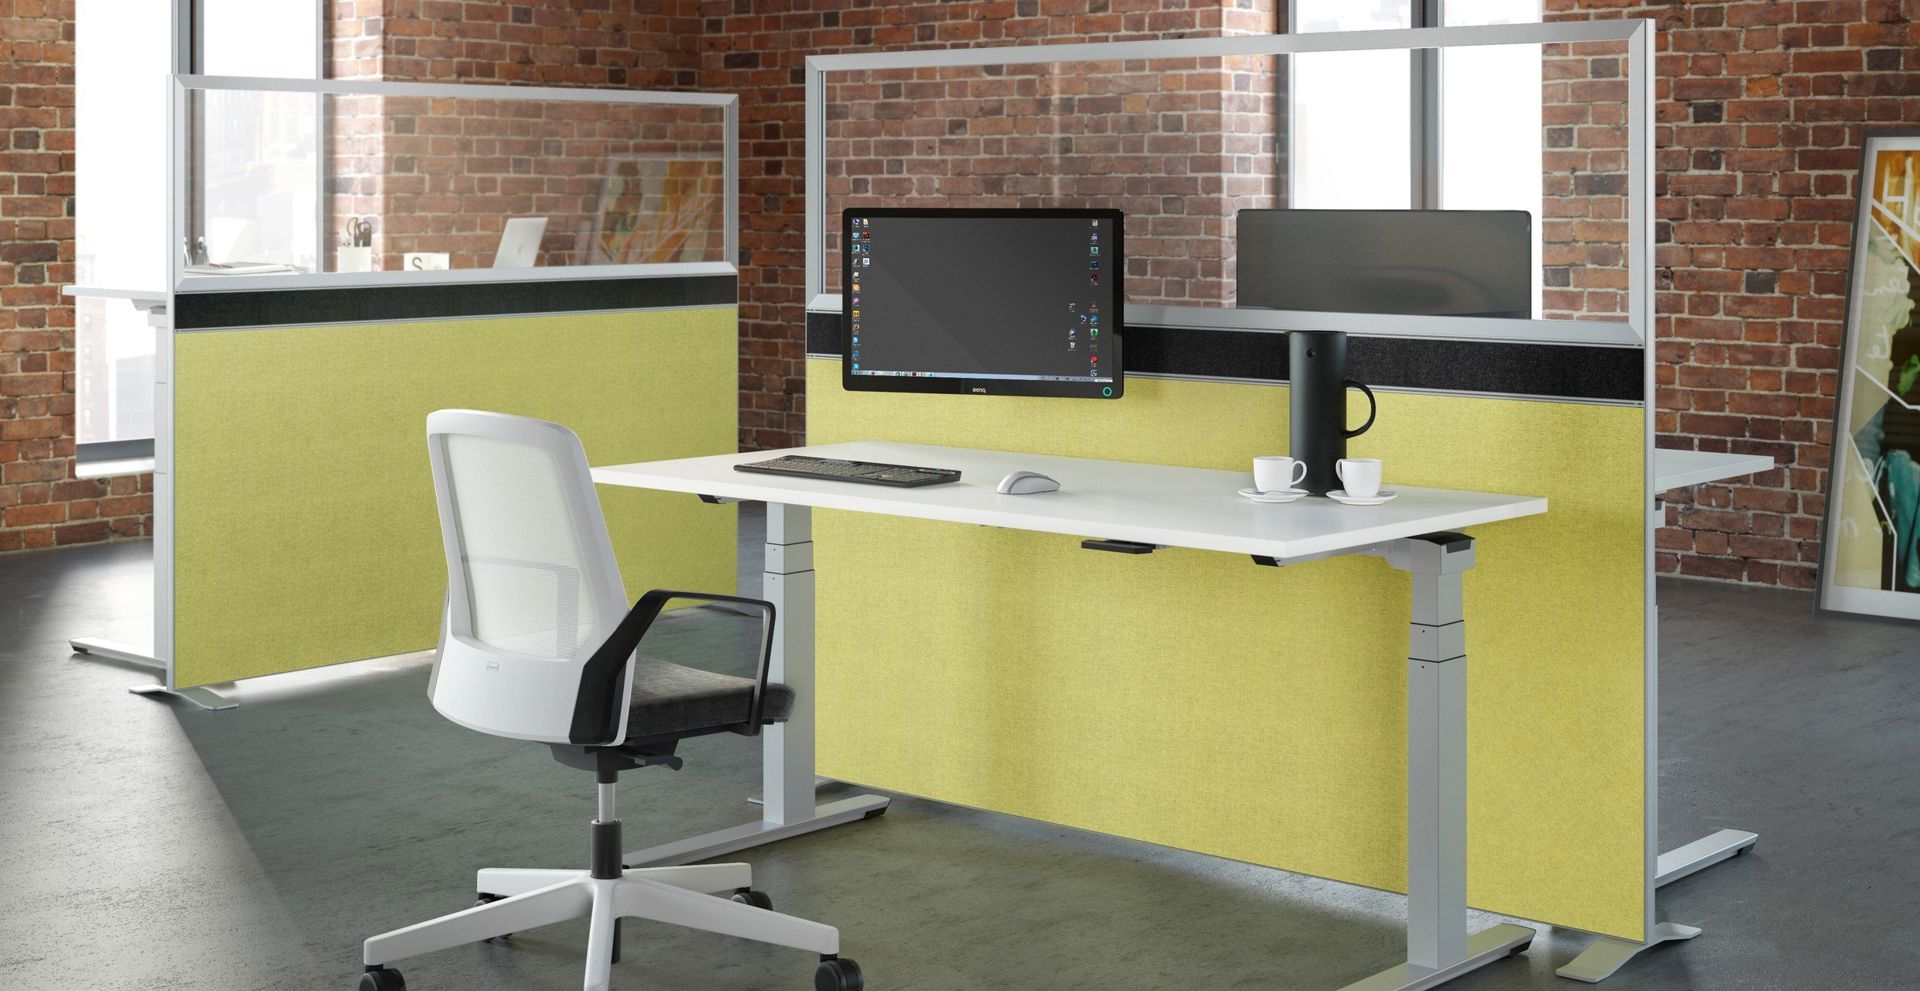 Elektrisch höhenverstellbarer Schreibtisch CREW Palmberg Dynamik Effizienz Büroausstattung ergonomisch einfach verstellbar 2in1 